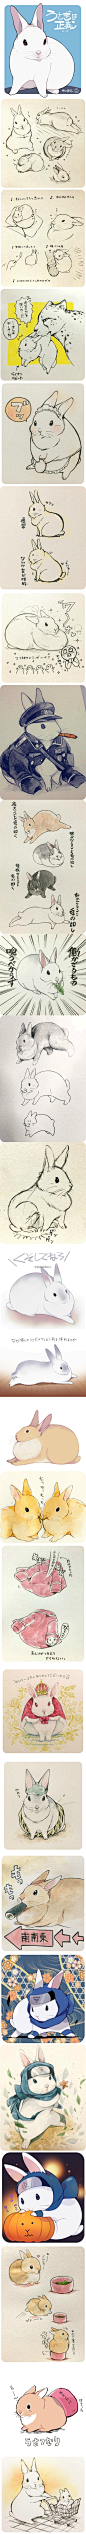 兔兔即为正义——井口病院(id950277) 笔下可爱的兔兔们 附上兔兔的绘画教程